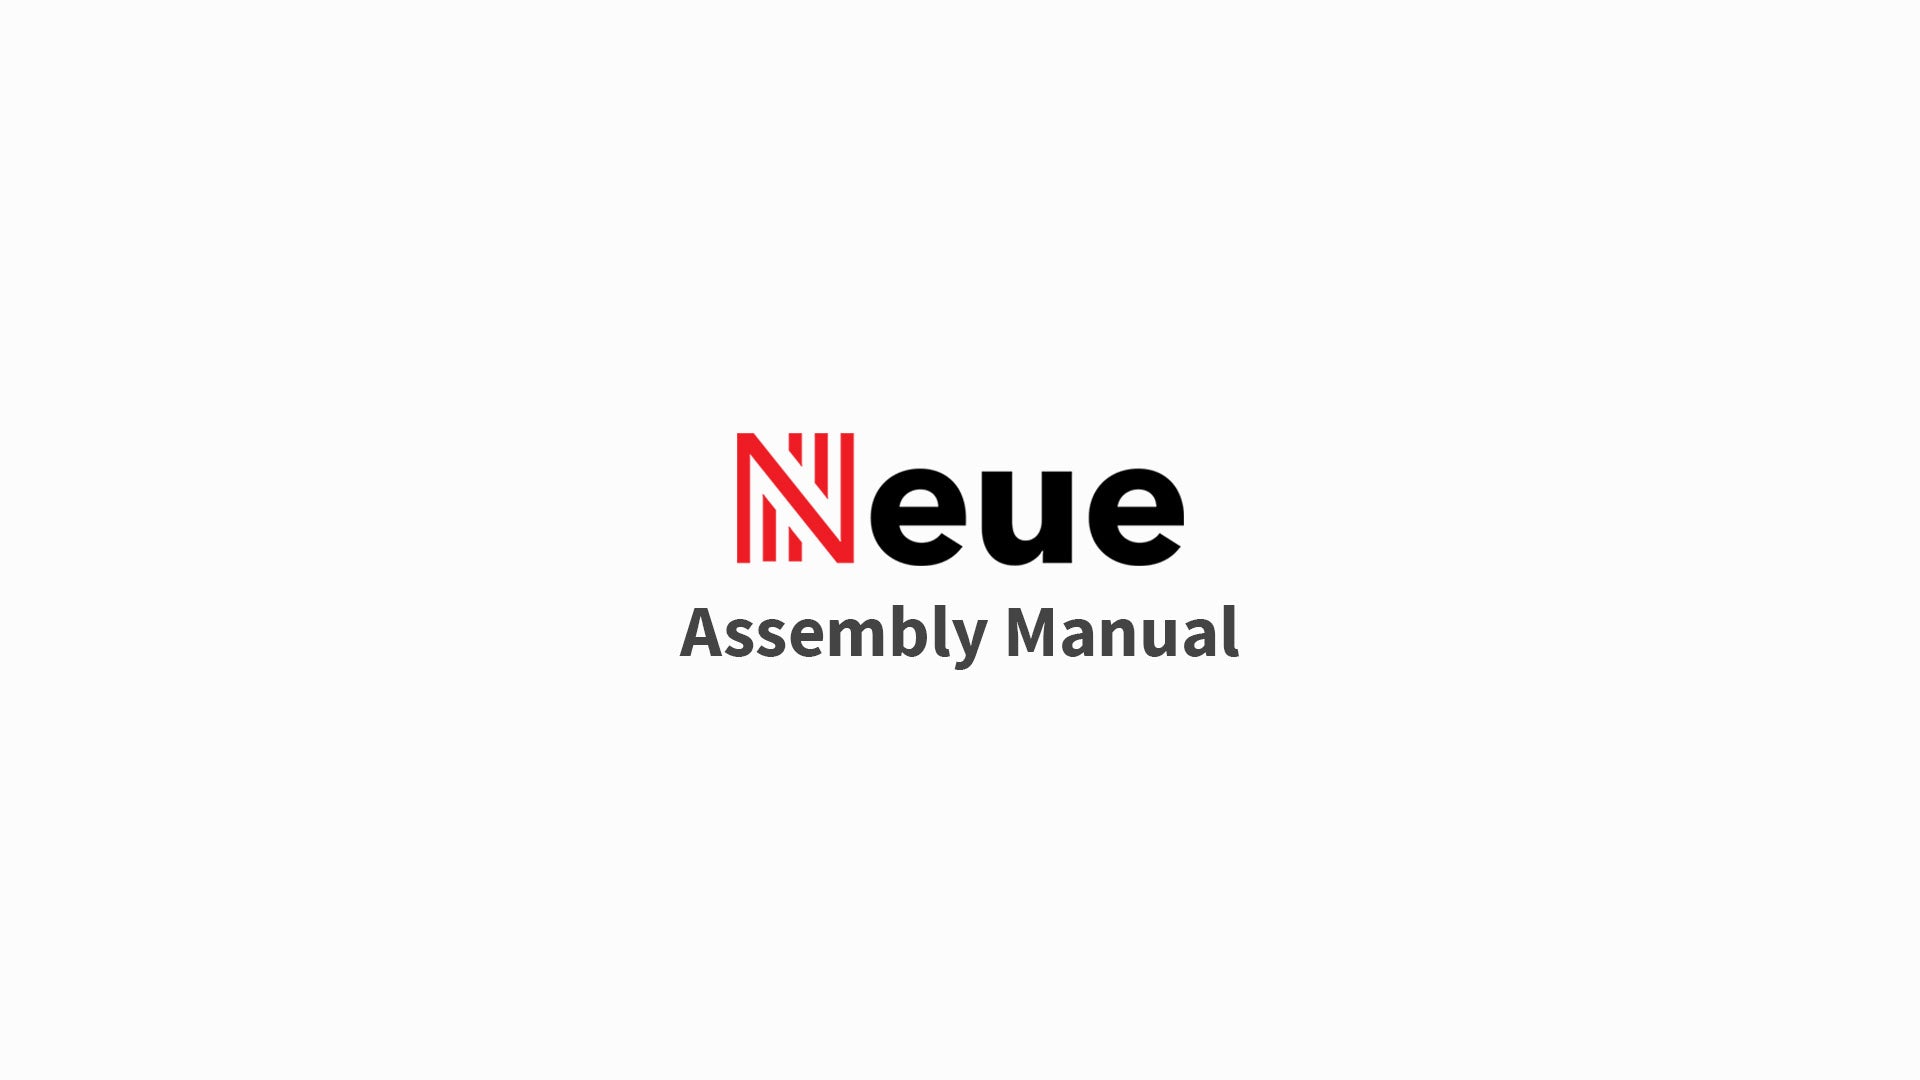 NeueChair Assembly Guide